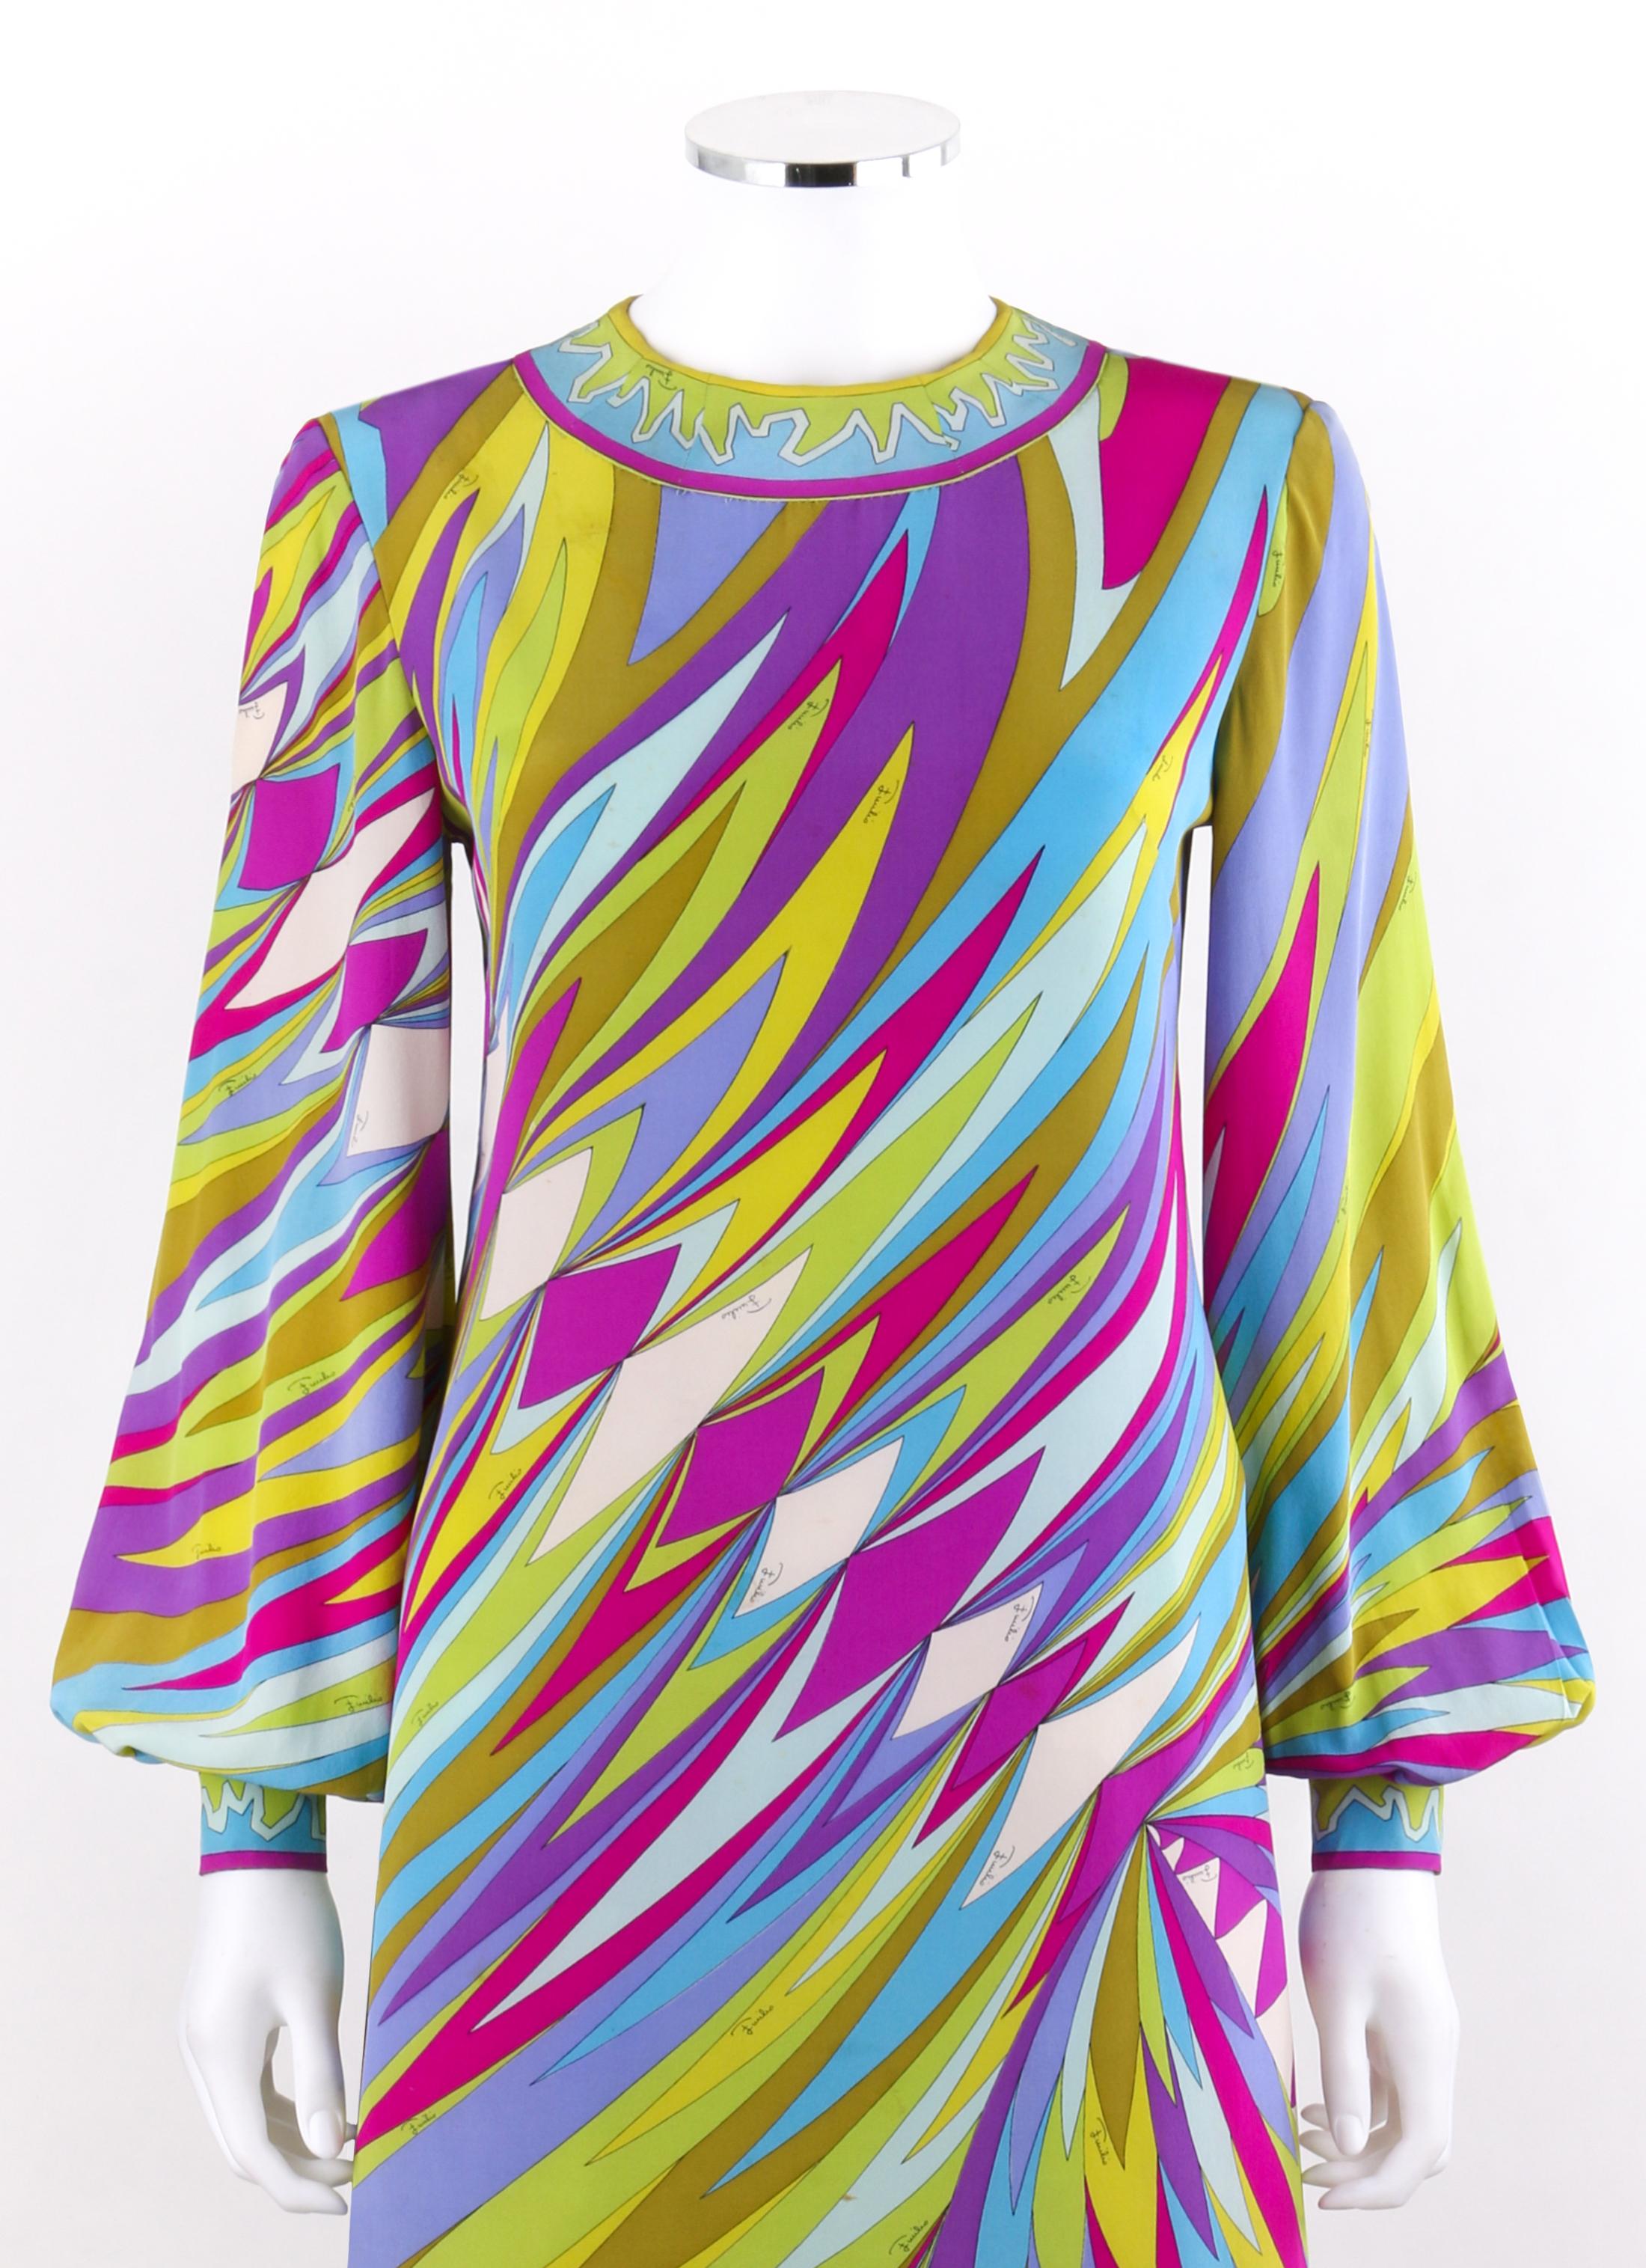 EMILIO PUCCI c.1960's Multi-color Op Art Signature Print Silk Maxi Dress 
 
Circa : 1960's
Label(s) : Emilio Pucci   
Style : Robe longue
Couleur(s) : nuances de vert, de bleu, de violet, de jaune et de blanc.
Doublée : Non
Marqué Contenu du tissu :